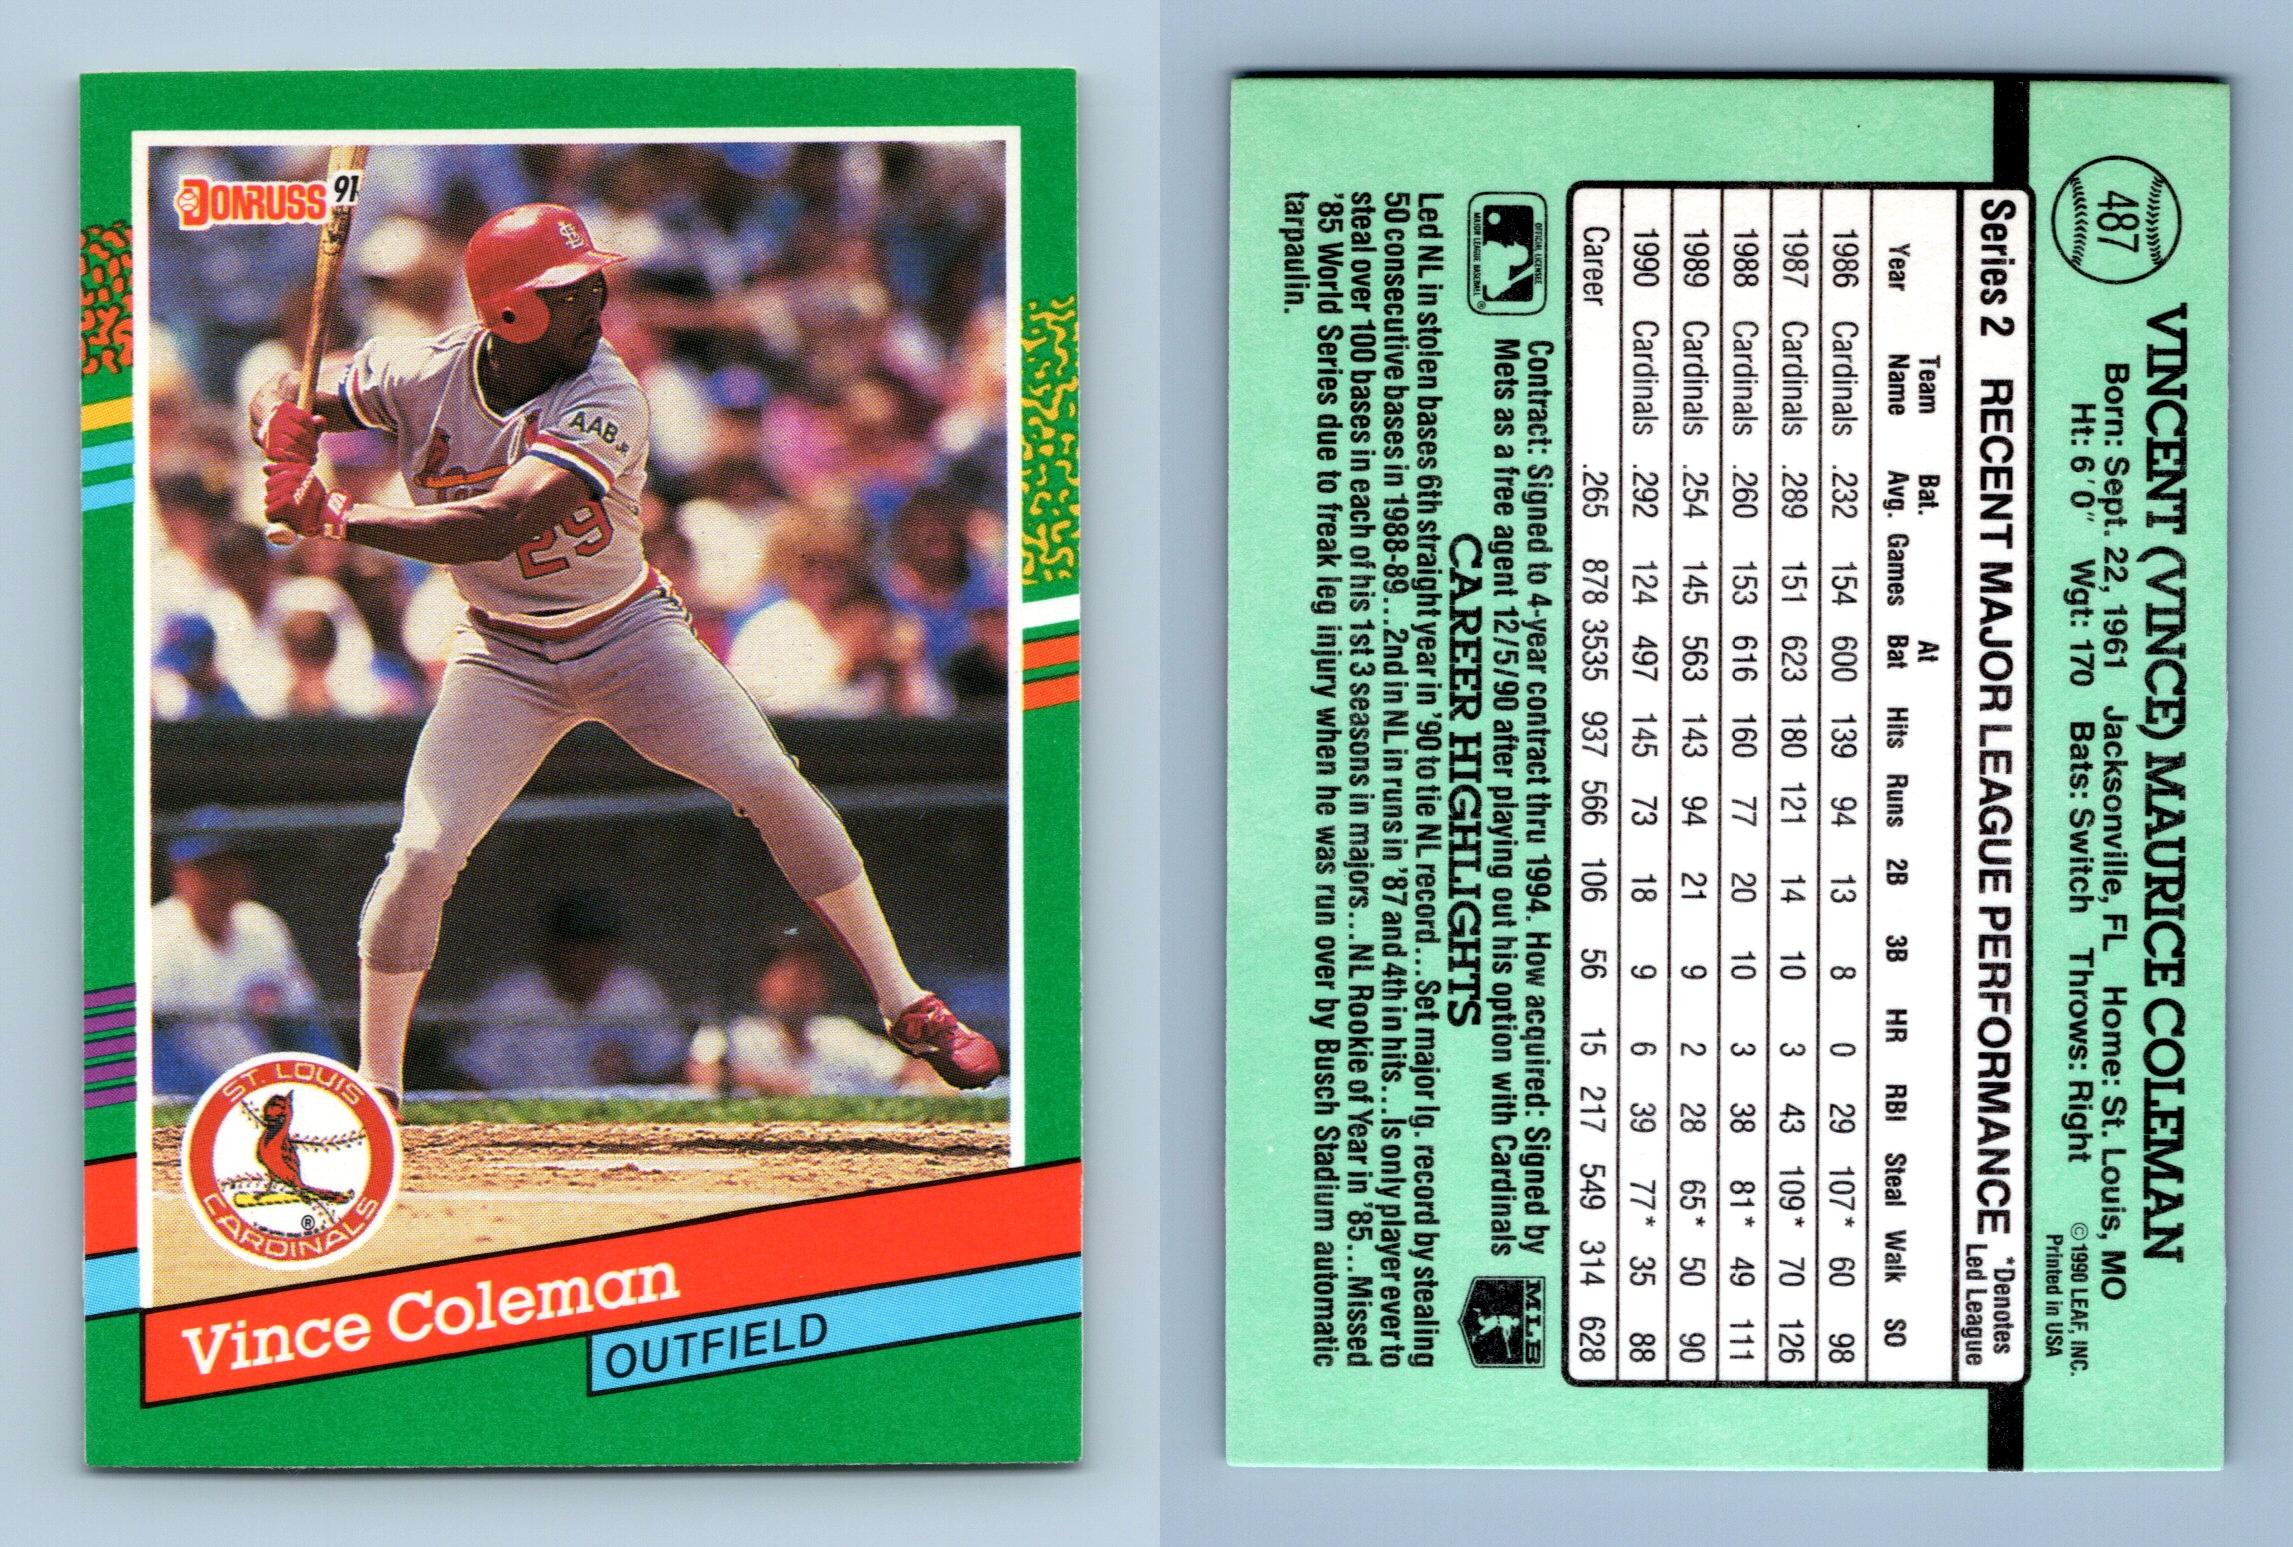 1986, Vince Coleman, Autographed DONRUSS Rookie Card